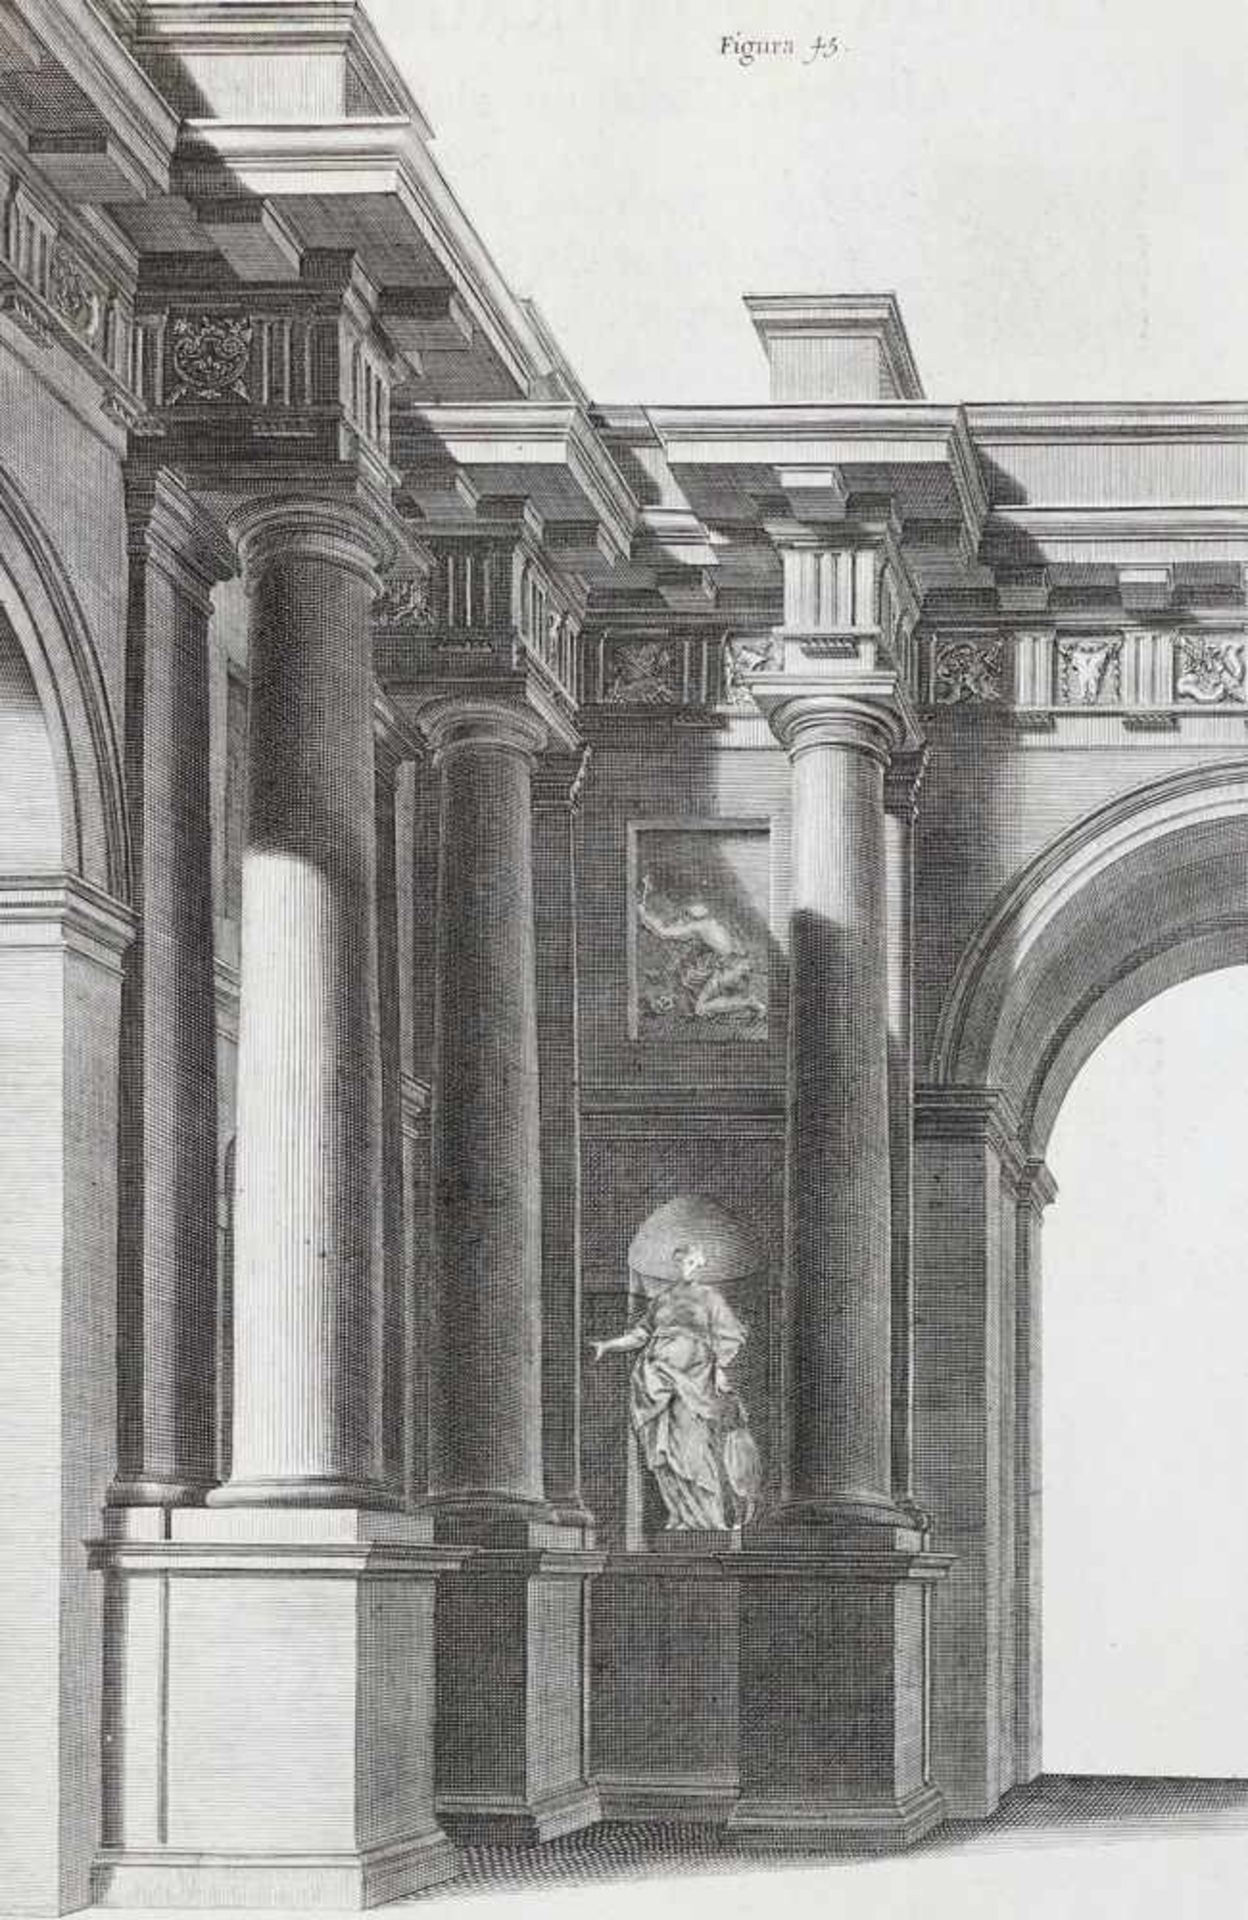 Pozzo,A.Perspectiva pictorum, et architectorum. - Prospettiva de' pittori et architetti. 2 Bde. Rom,